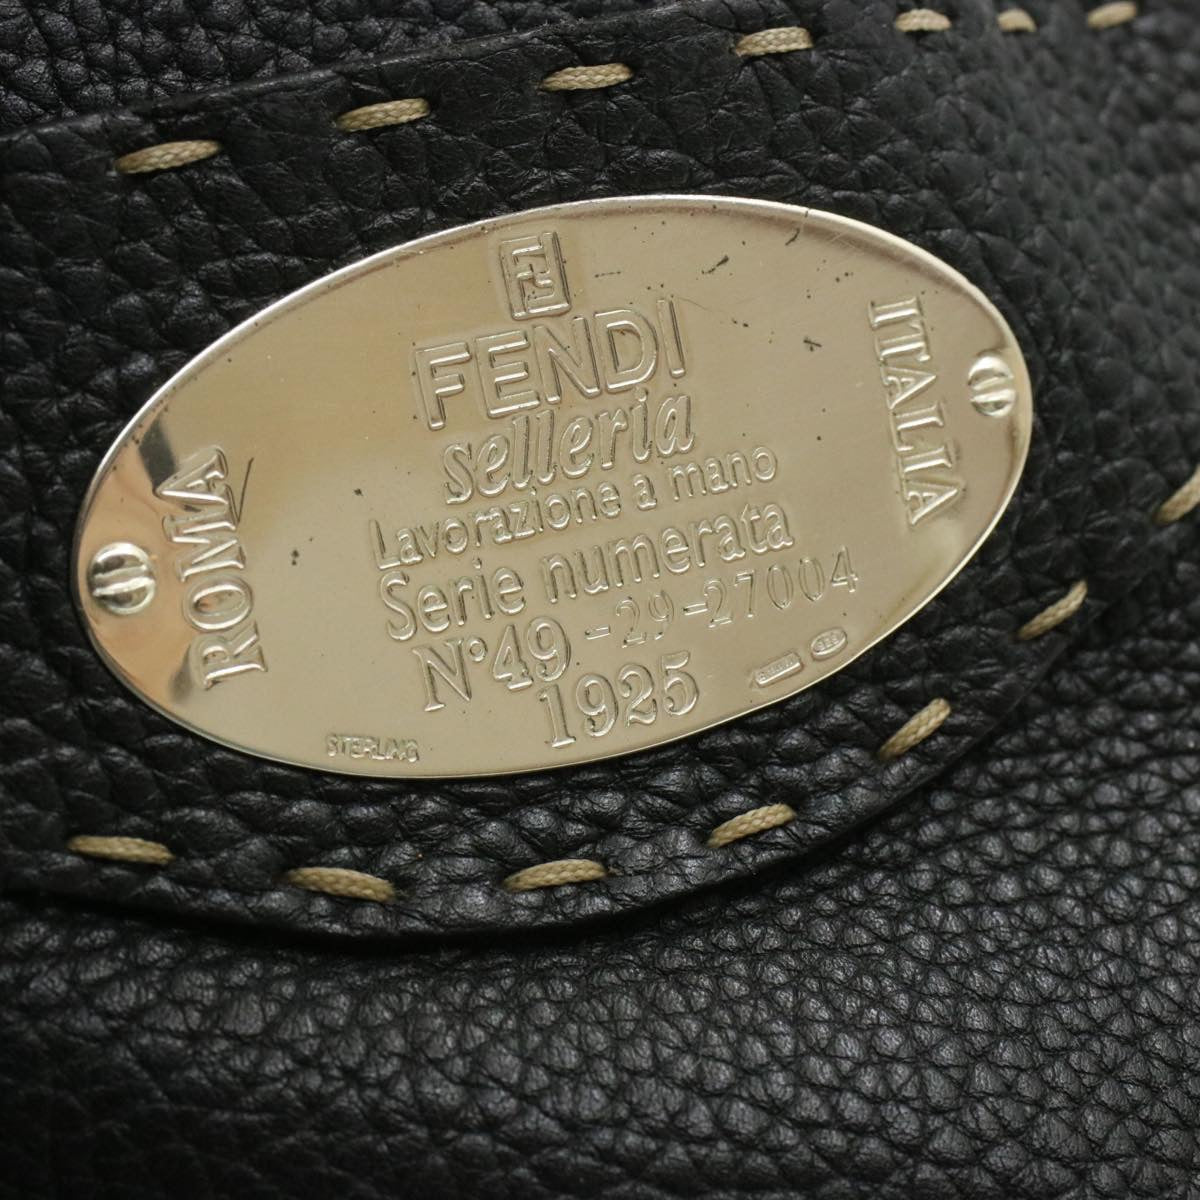 FENDI Shoulder Bag Leather Black Auth rd1013